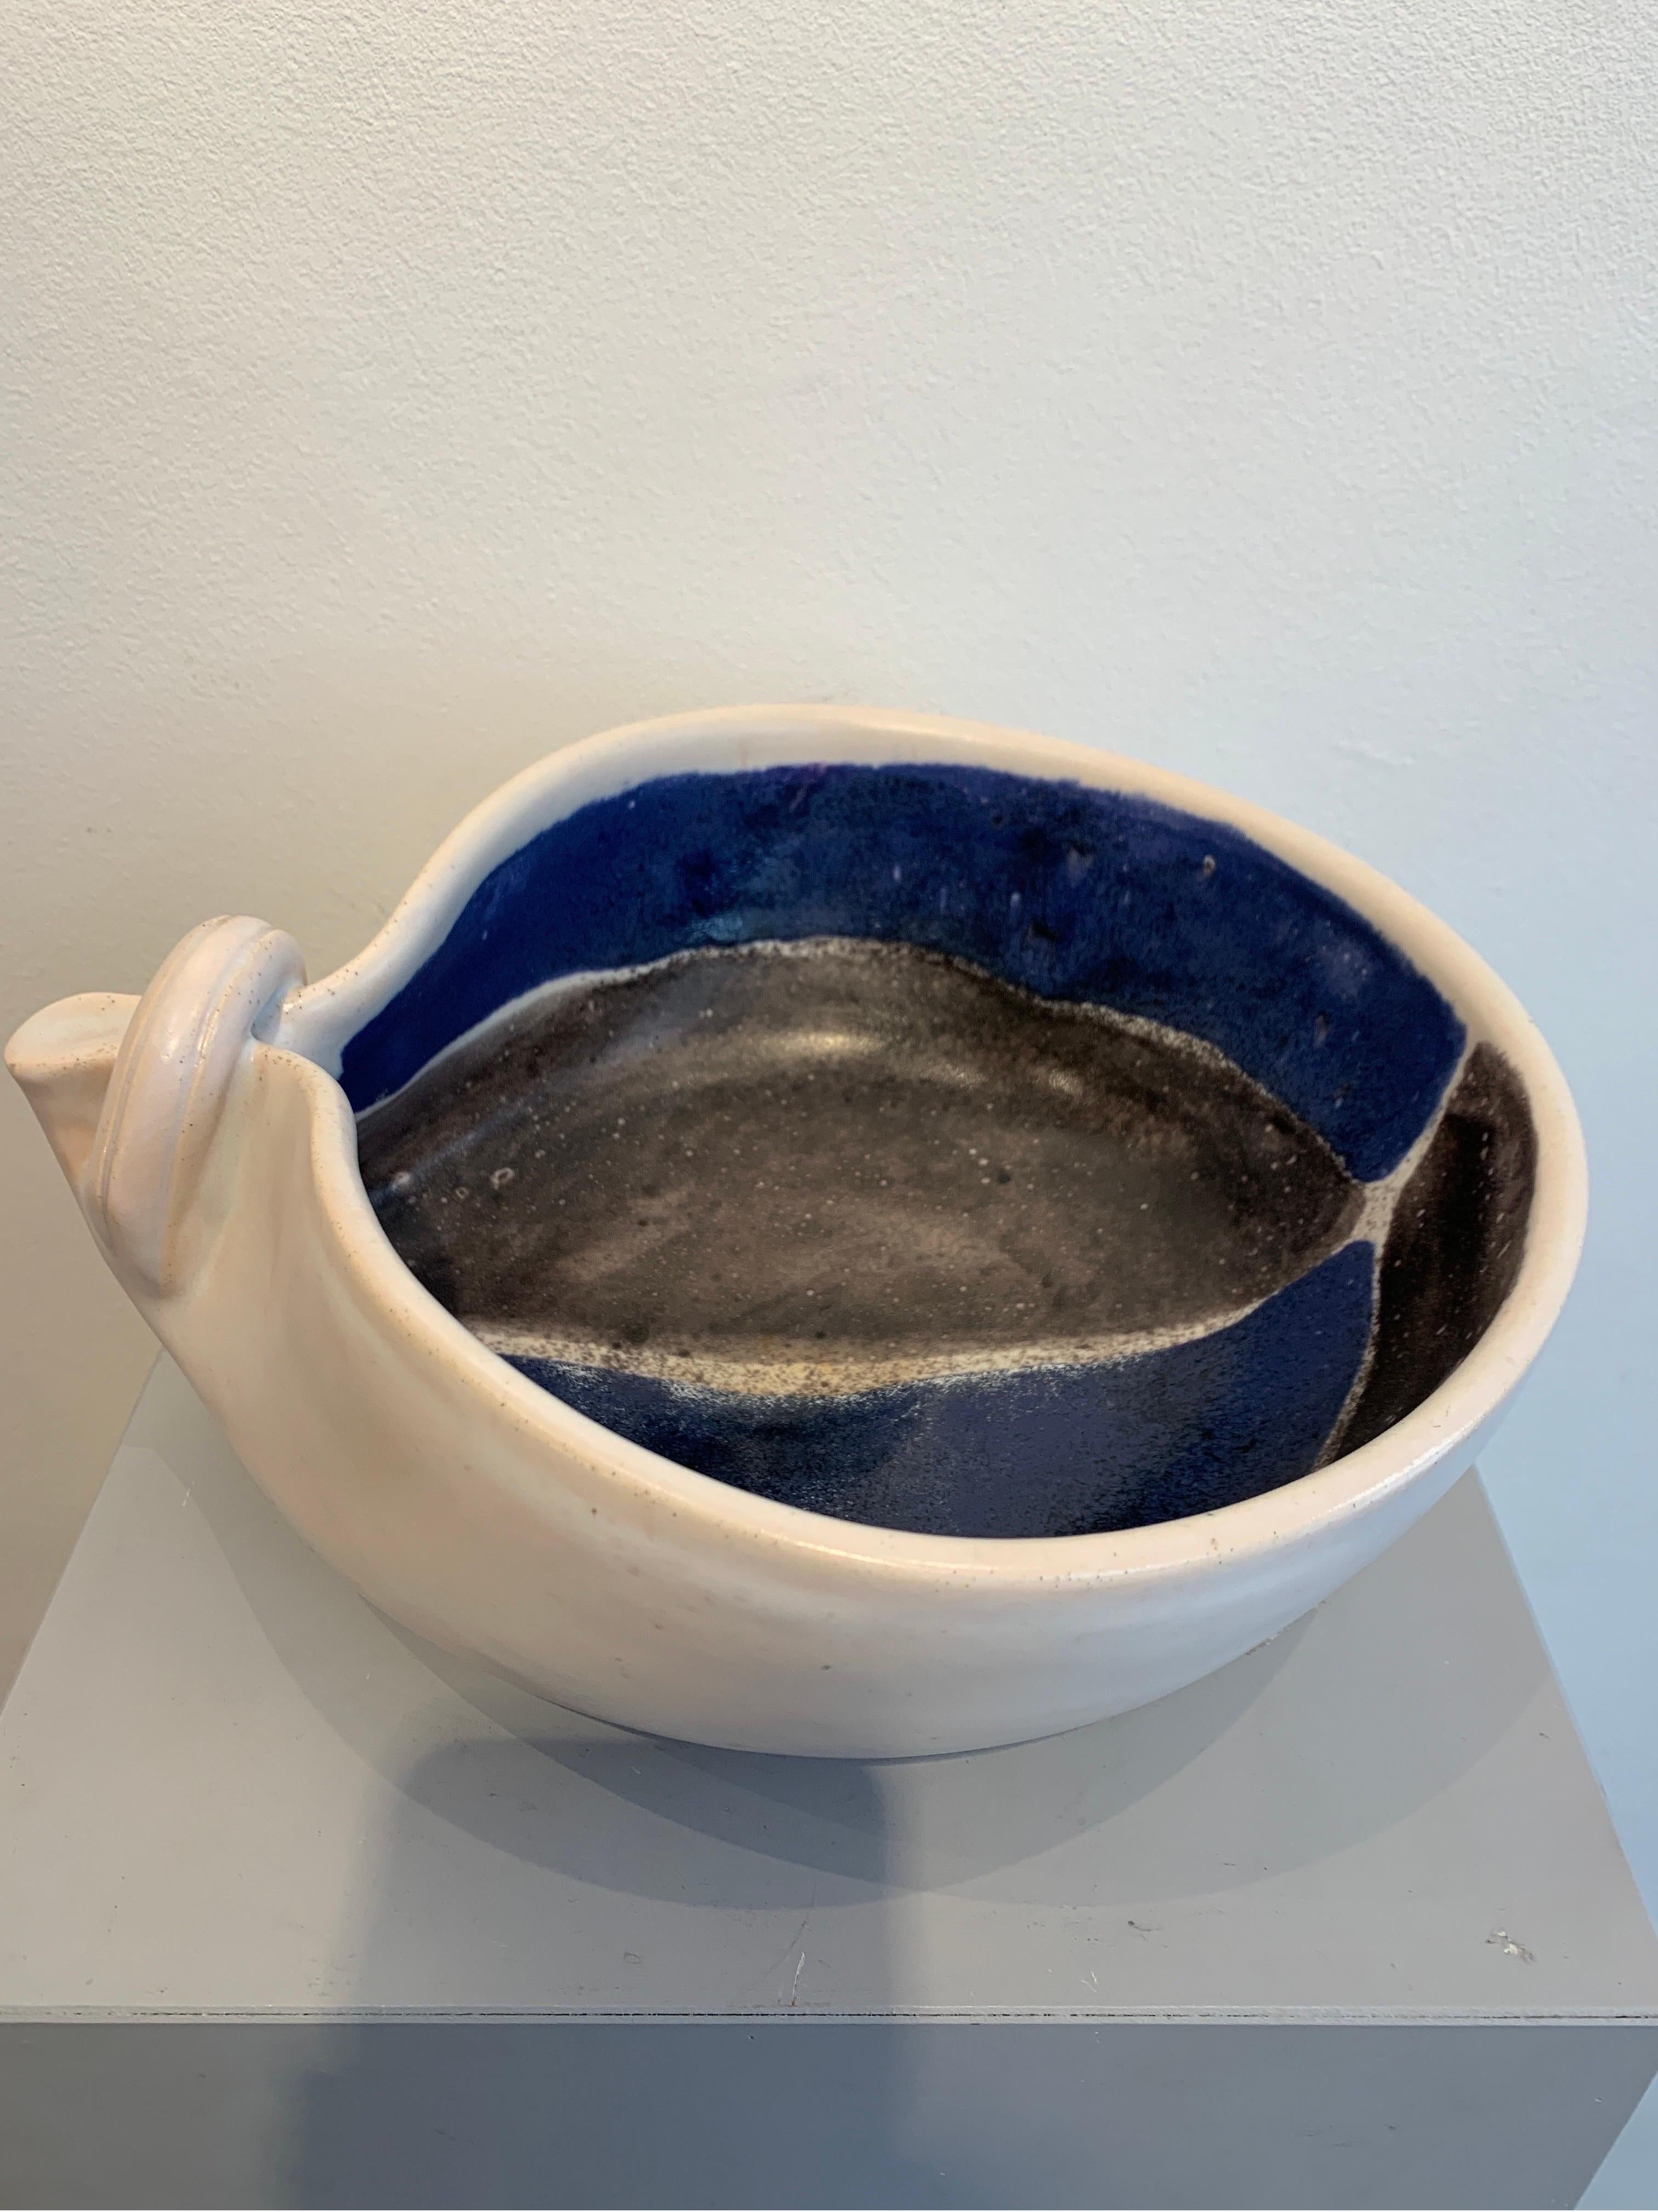 earthenware bowl in twi